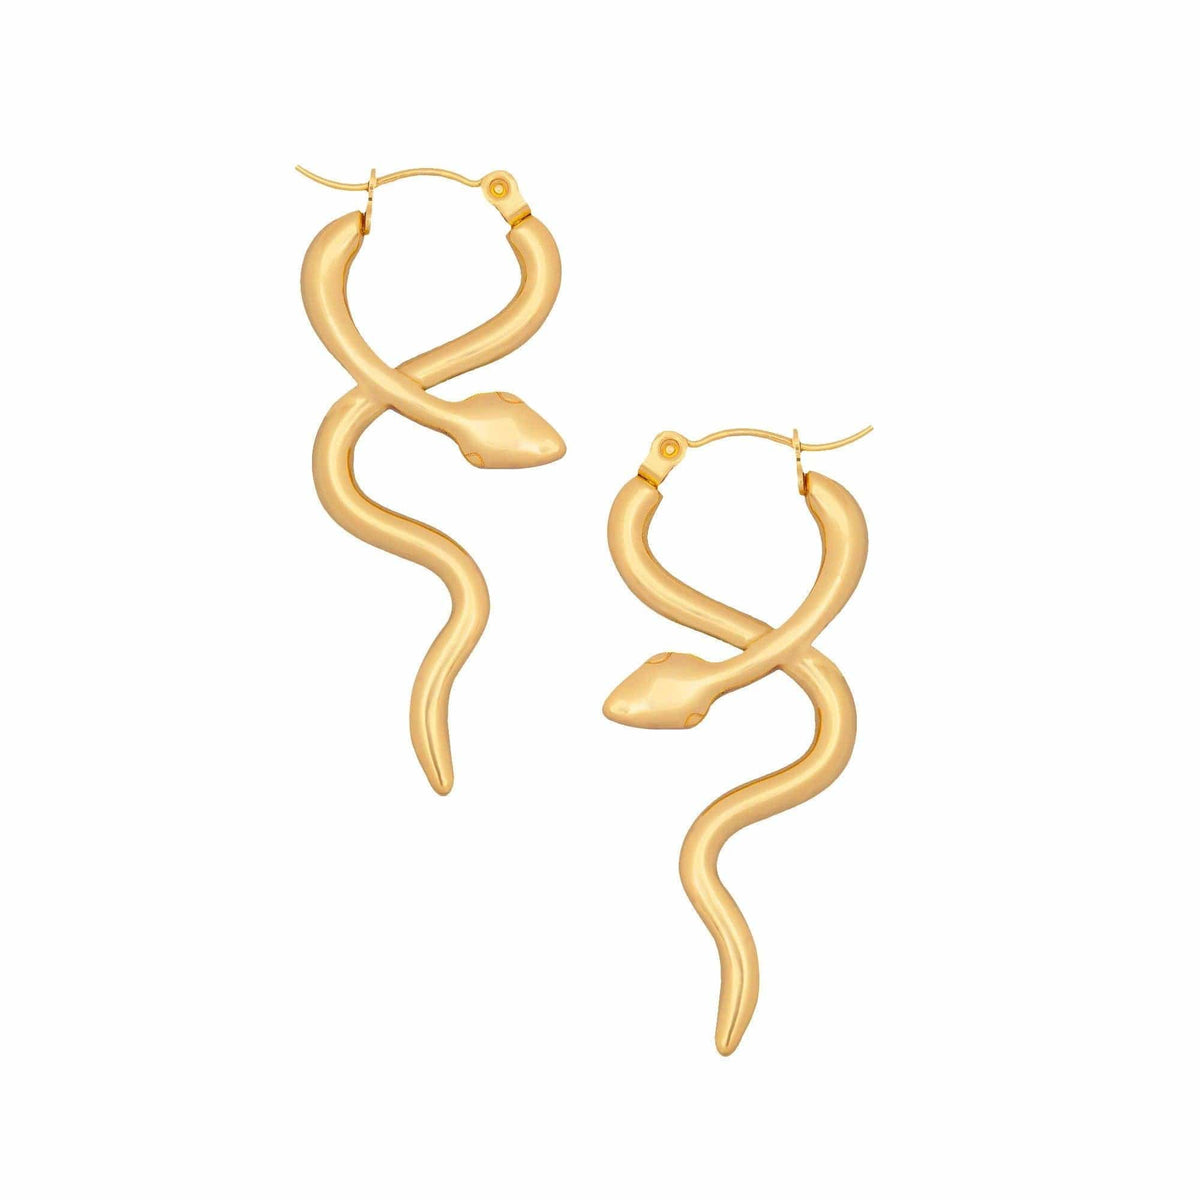 BohoMoon Stainless Steel Boa Hoop Earrings Gold